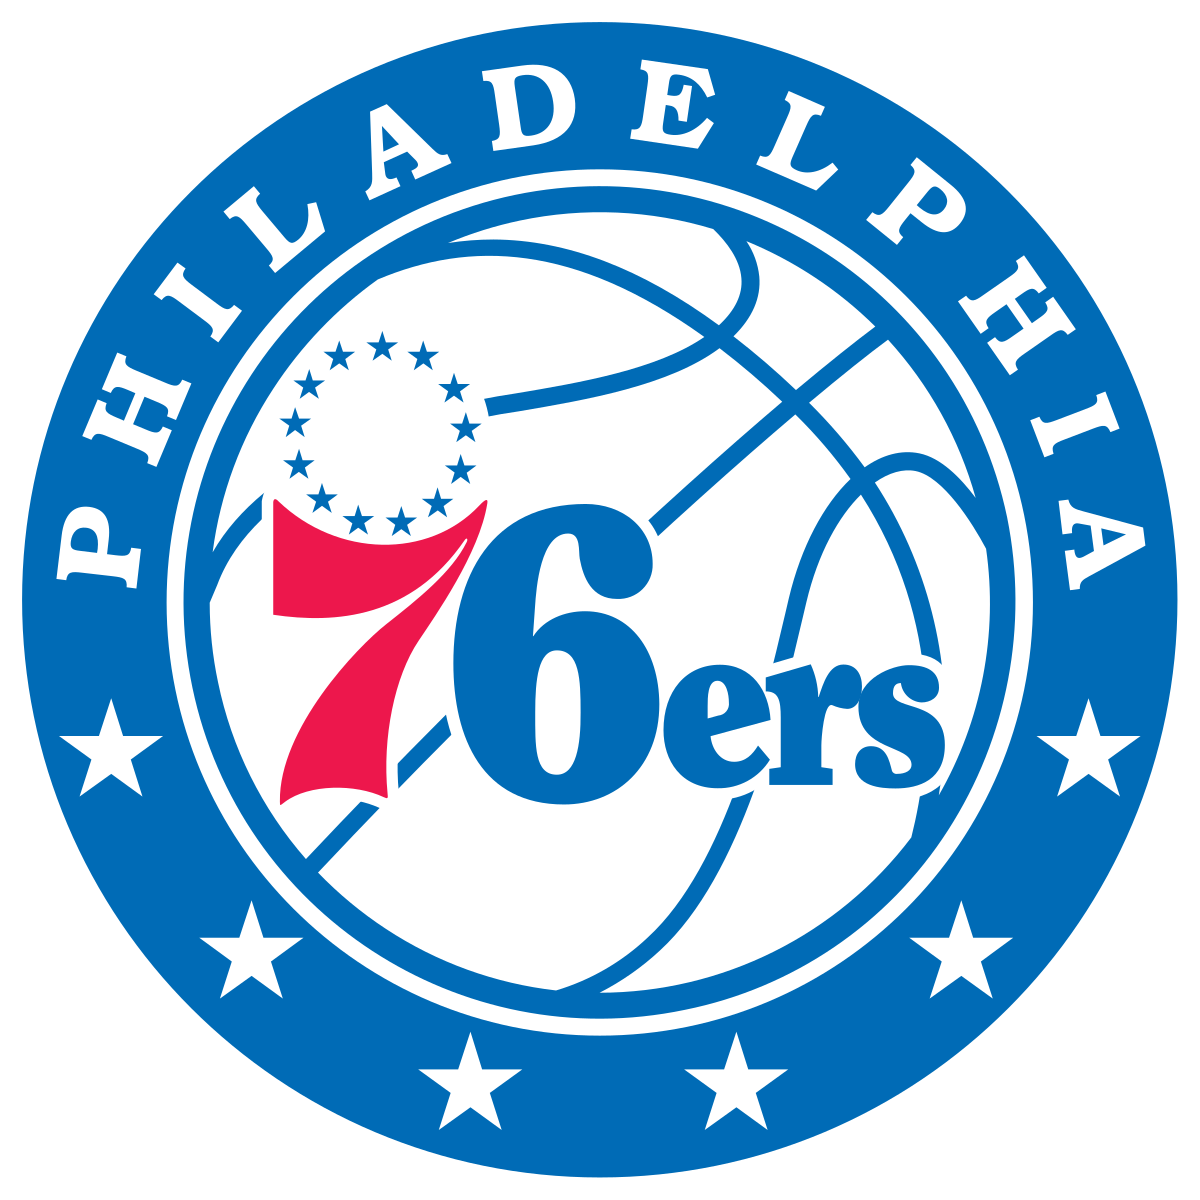 Philadelphia_76ers